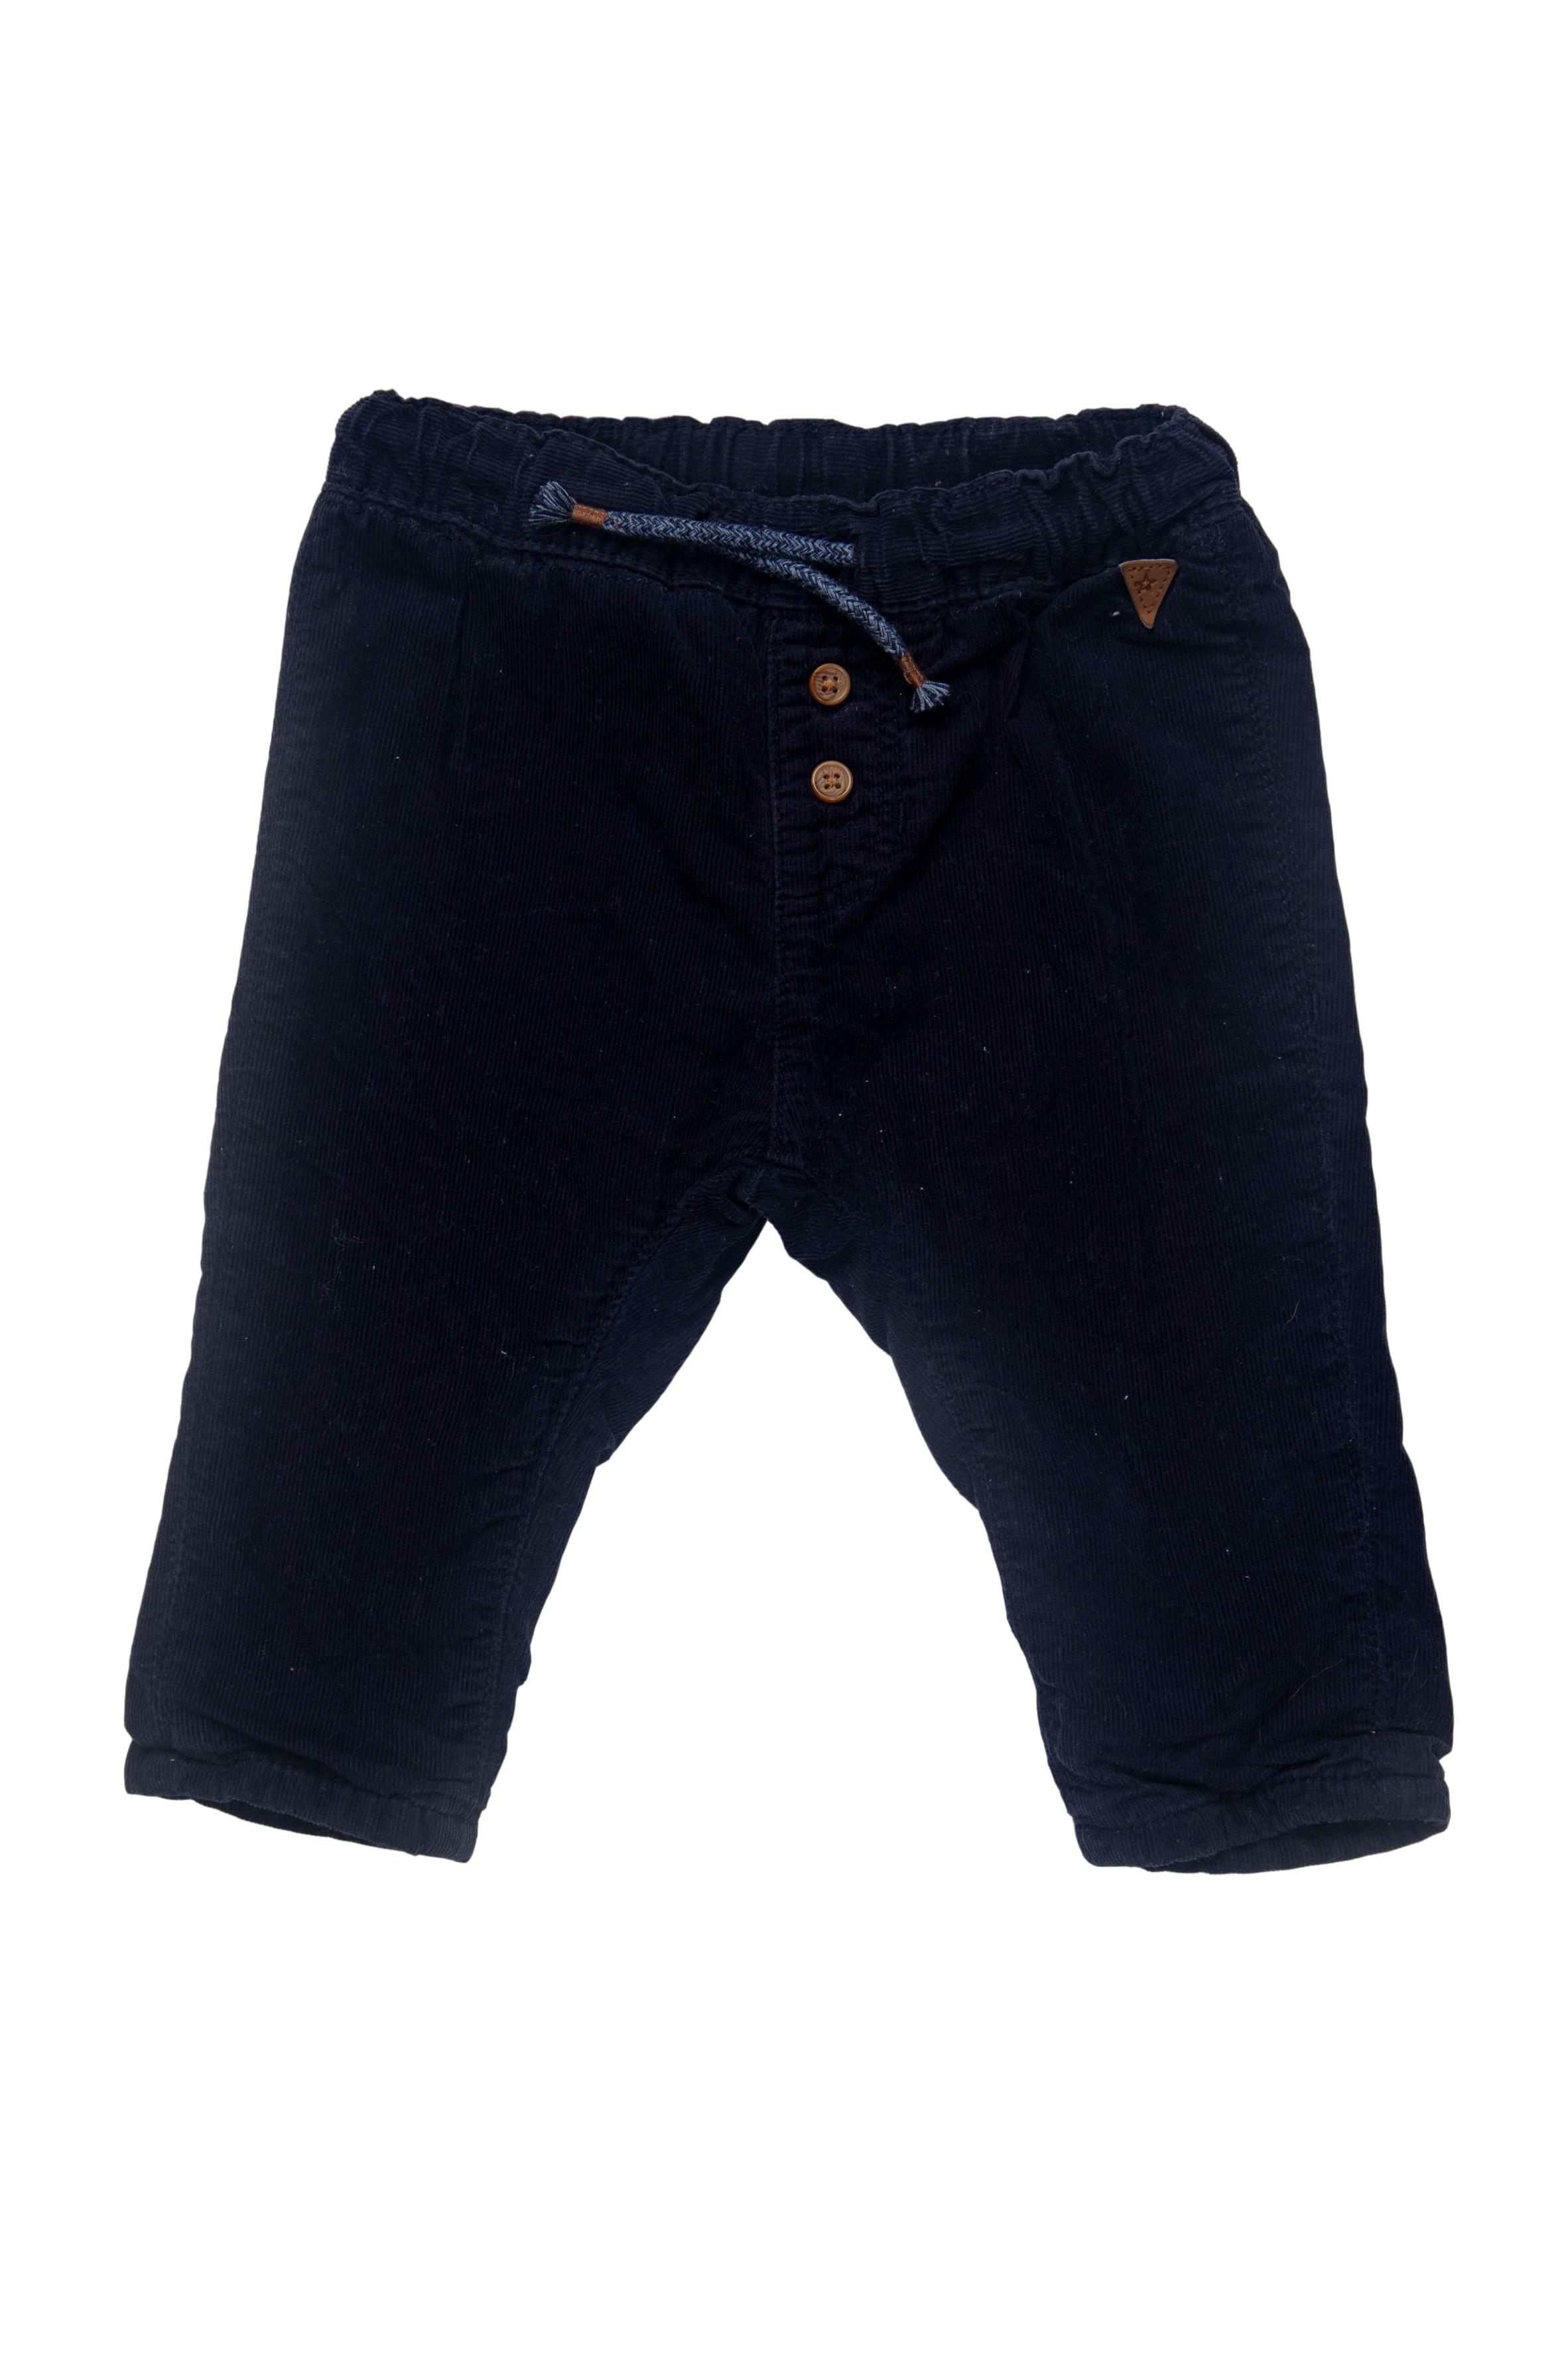 pantalón corderoy delgado 100% algodon, forro 85% algodon, con elastico en la cintura y cinta para ajustar, azul oscuro - H & M